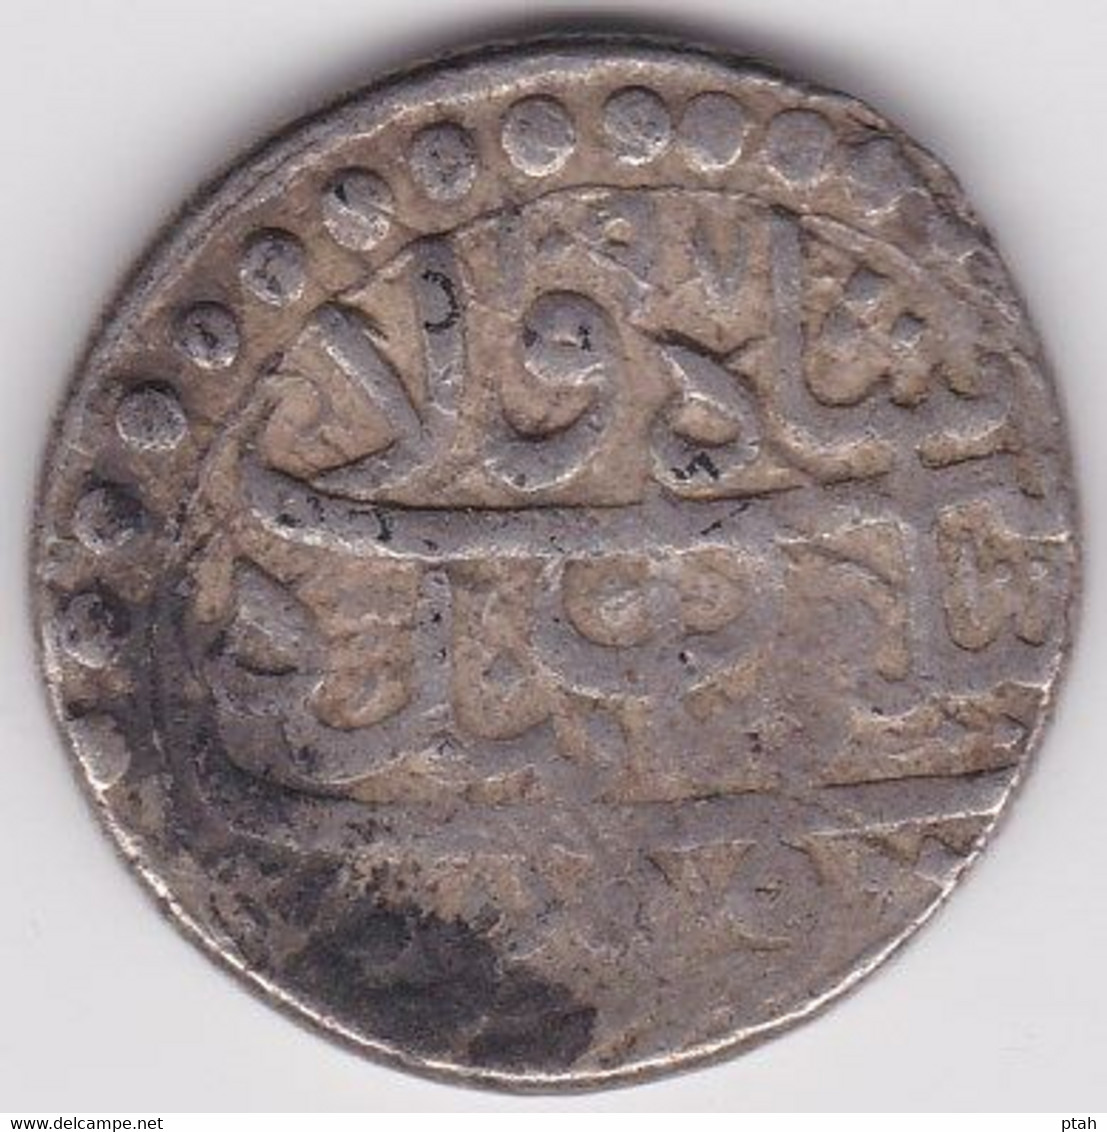 SAFAVID, Sulayman I, Abbasi Qazvin - Islamic